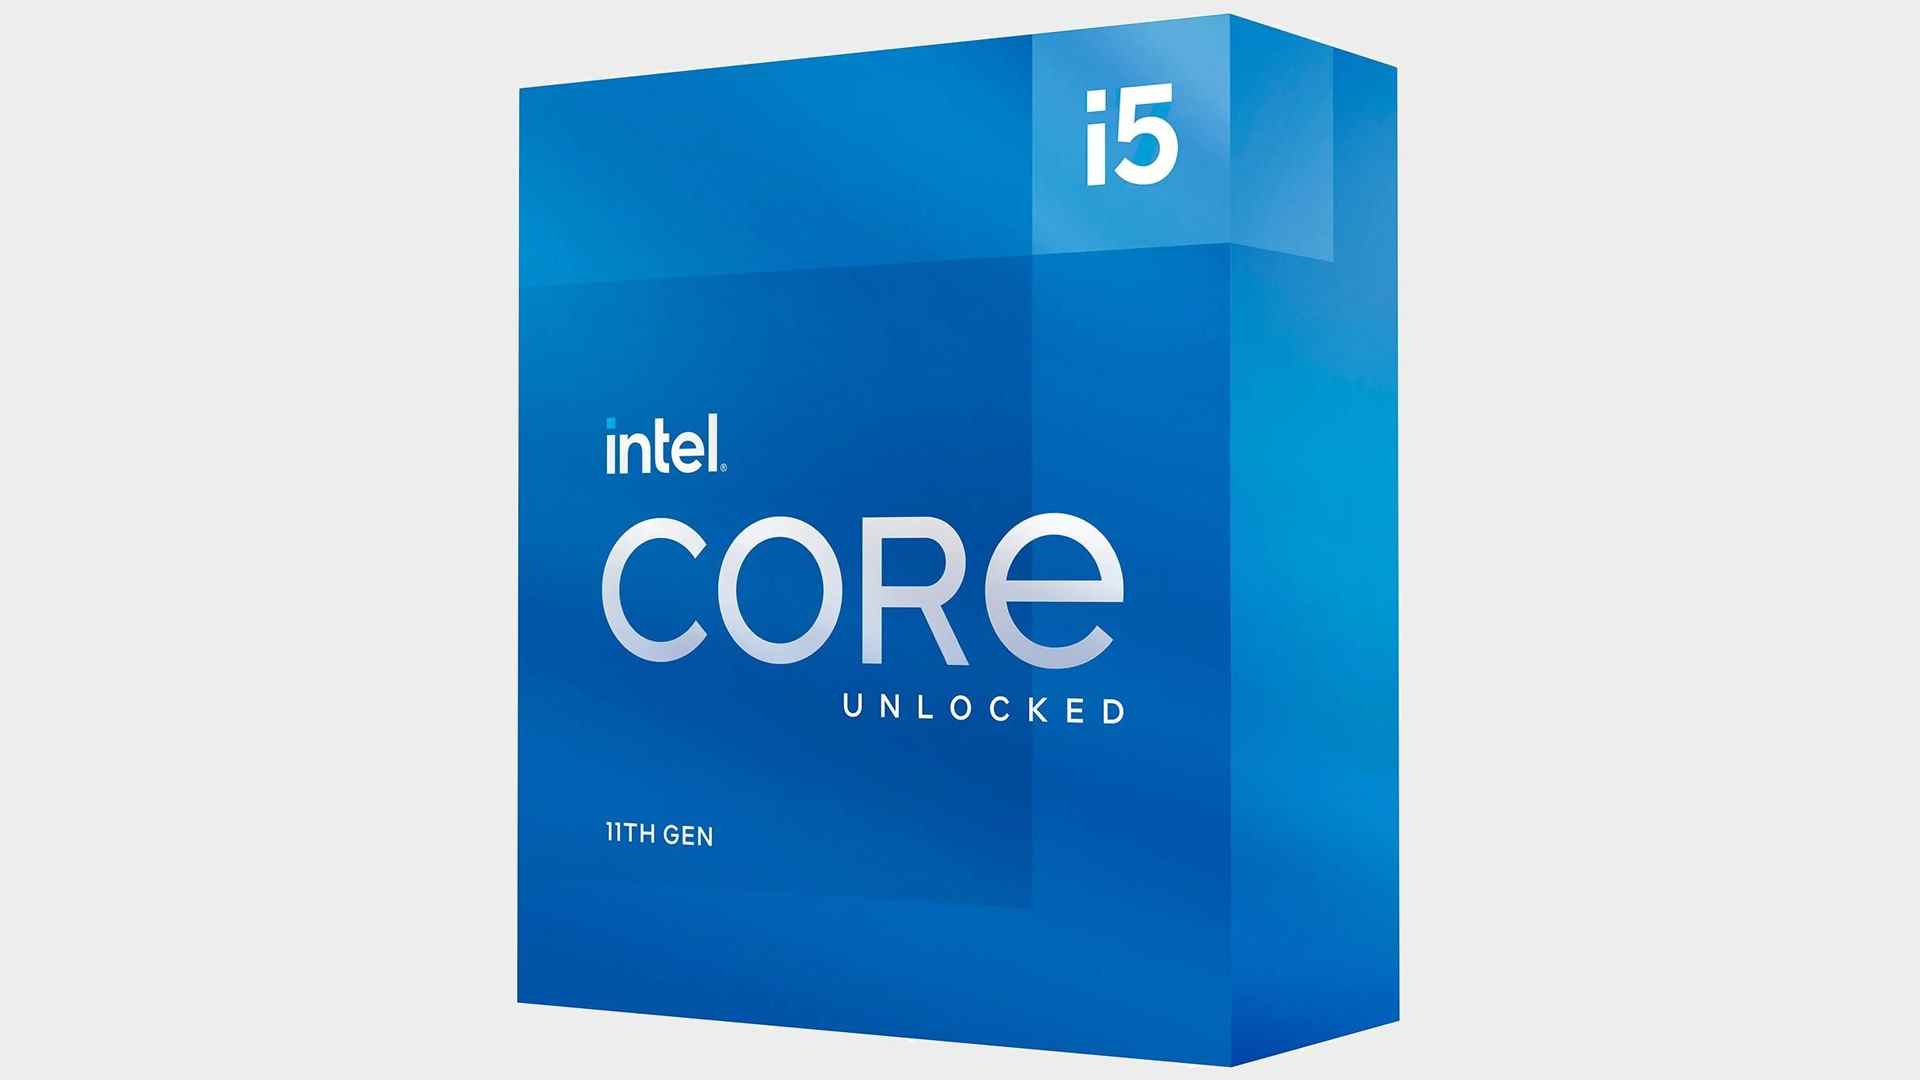 Meilleur processeur pour les jeux : Intel Core i5-11600K